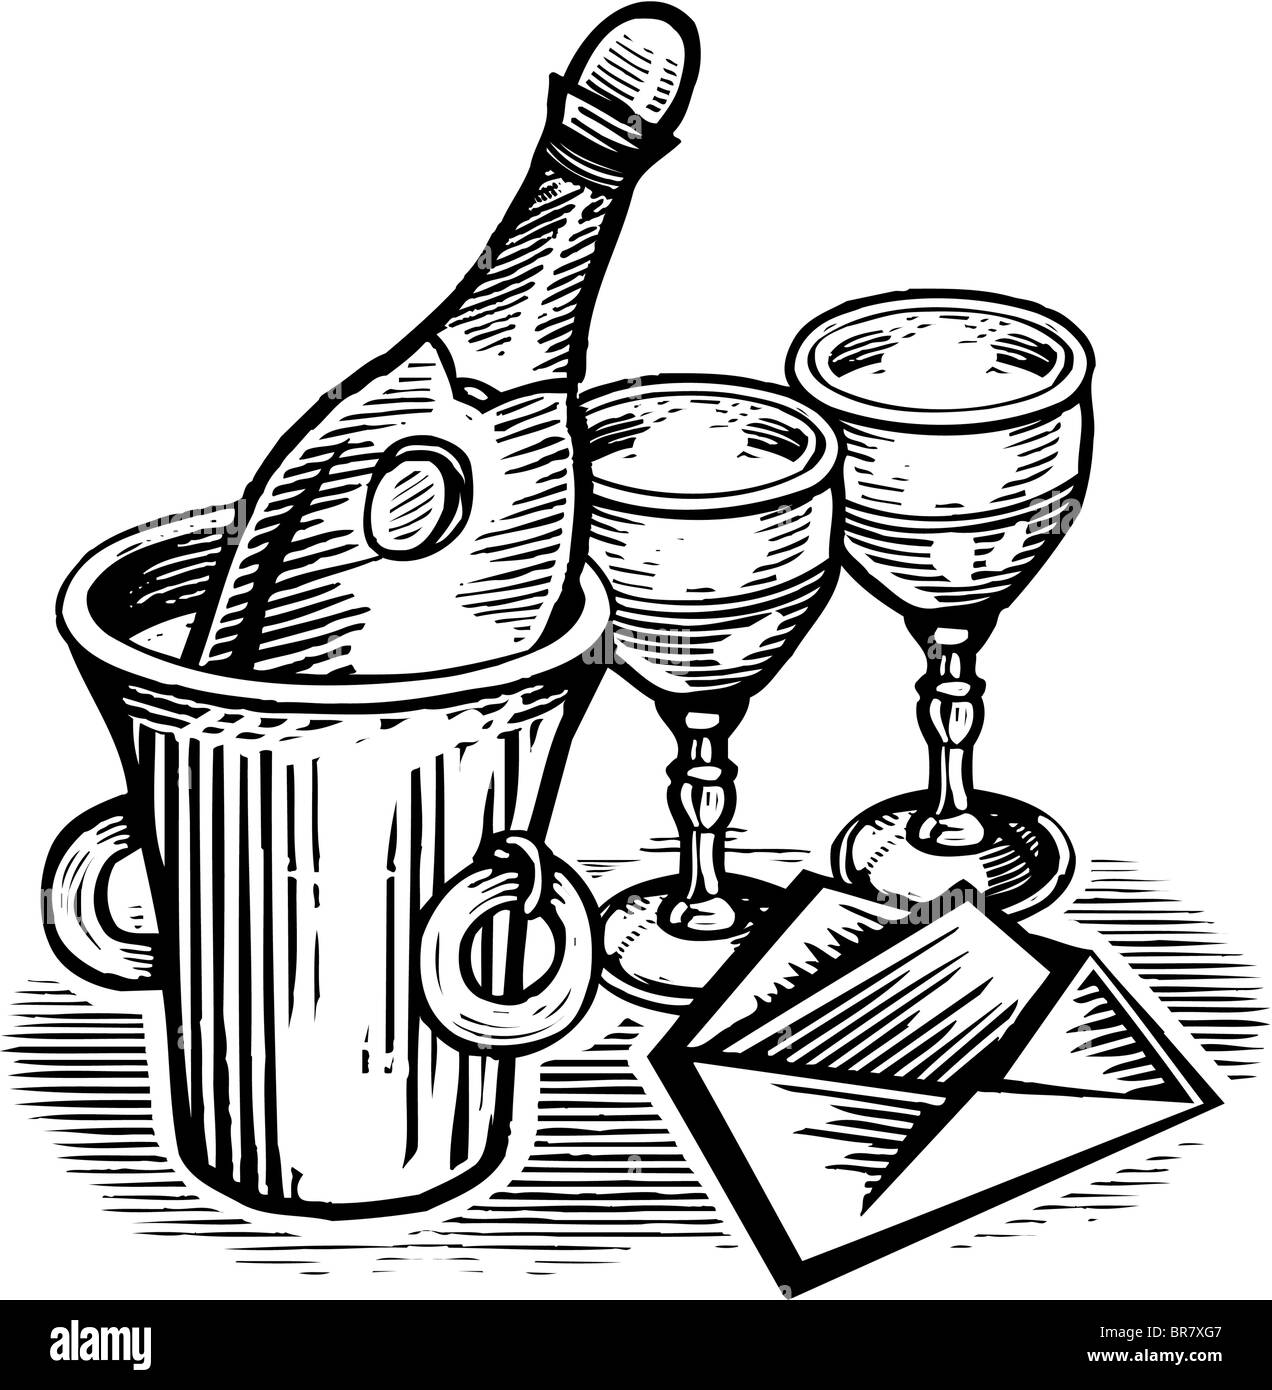 Une bouteille de champagne et verres illustré avec une carte dessinée en noir et blanc Banque D'Images